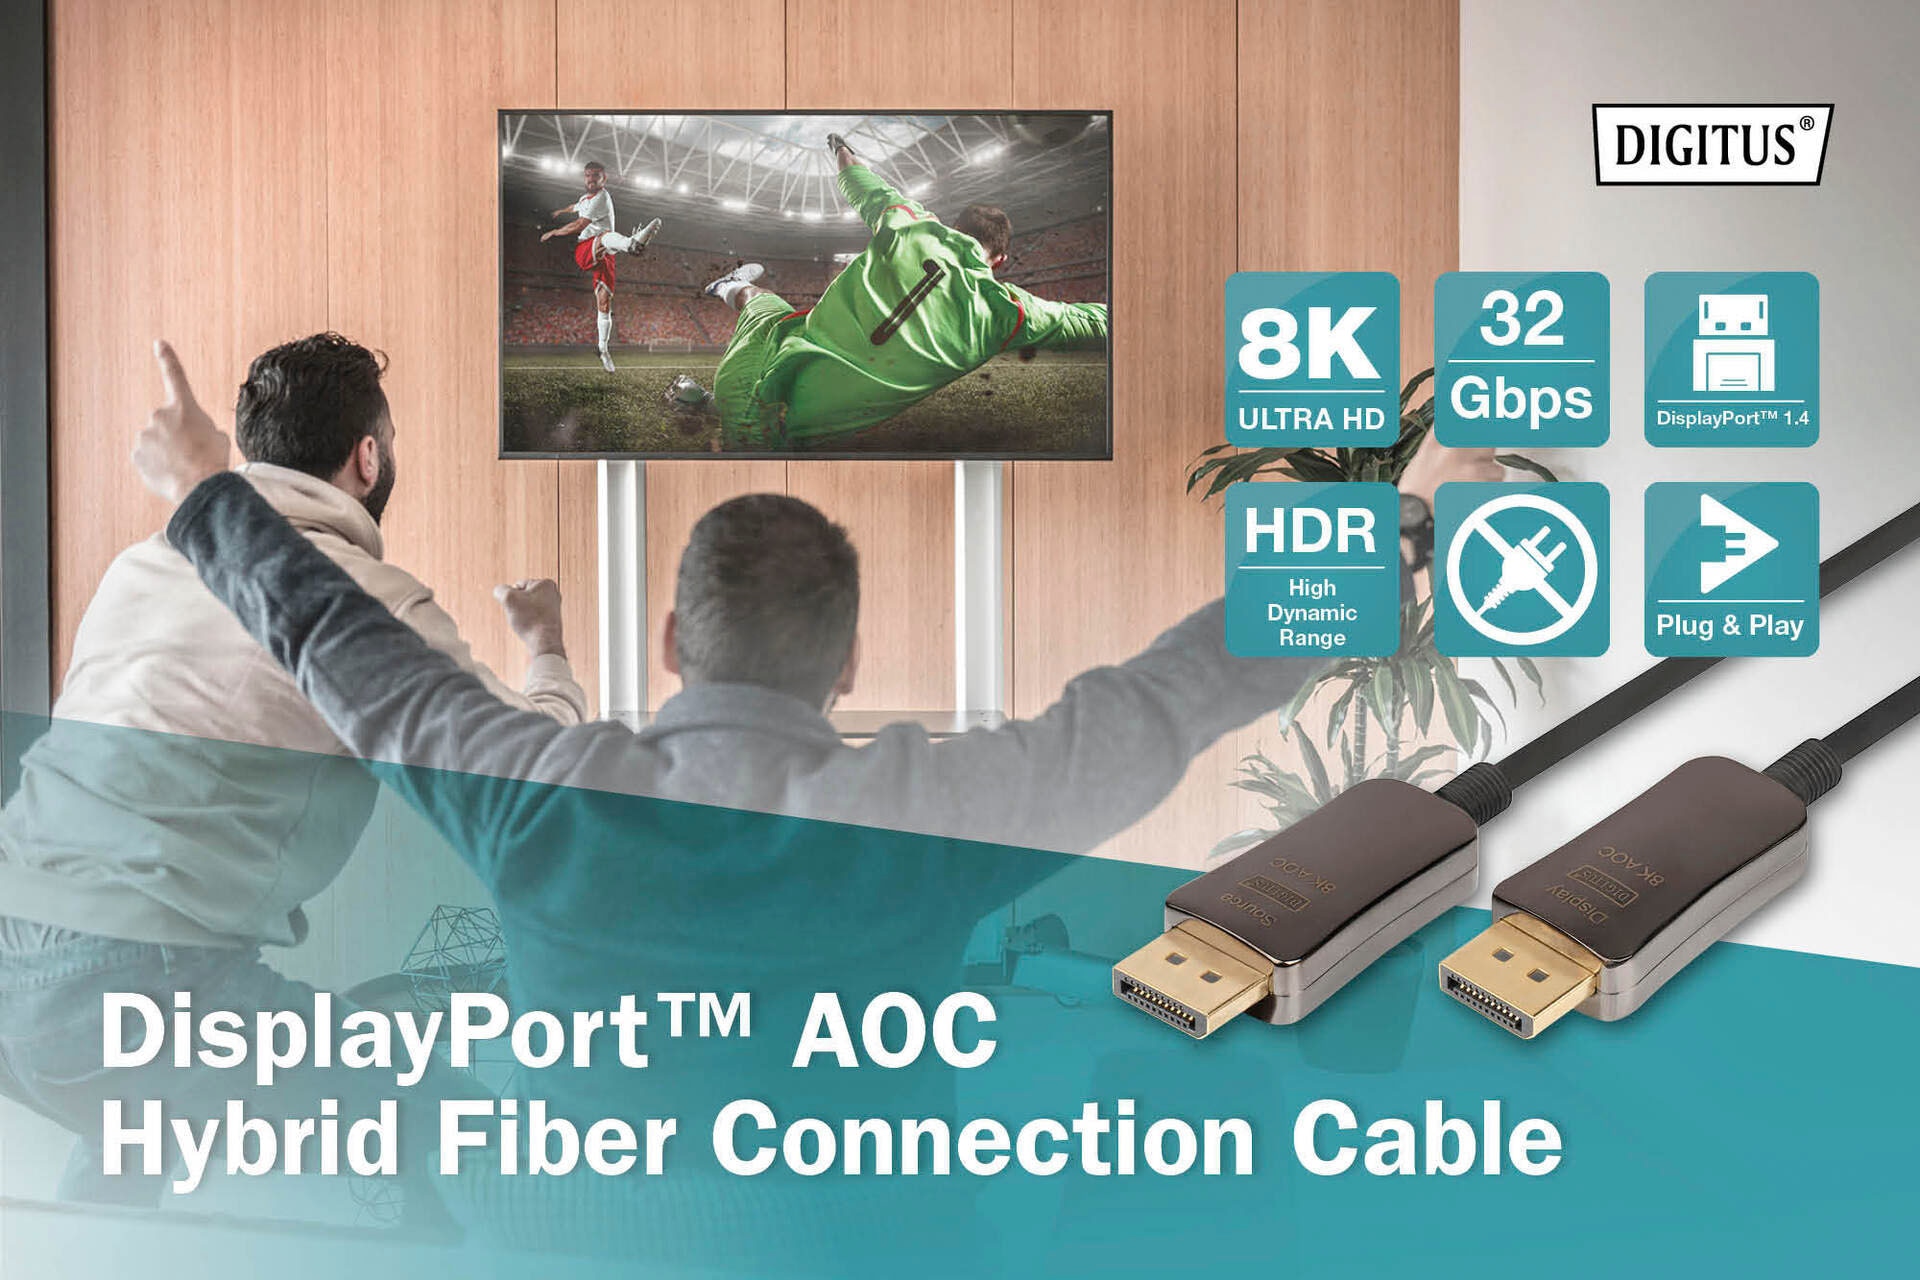 Digitus SAT-Kabel Hybrid UHD 1500 | Garantie 8K«, Glasfaserkabel, XXL UNIVERSAL AOC DisplayPort, 3 Jahre cm »DisplayPort™ ➥